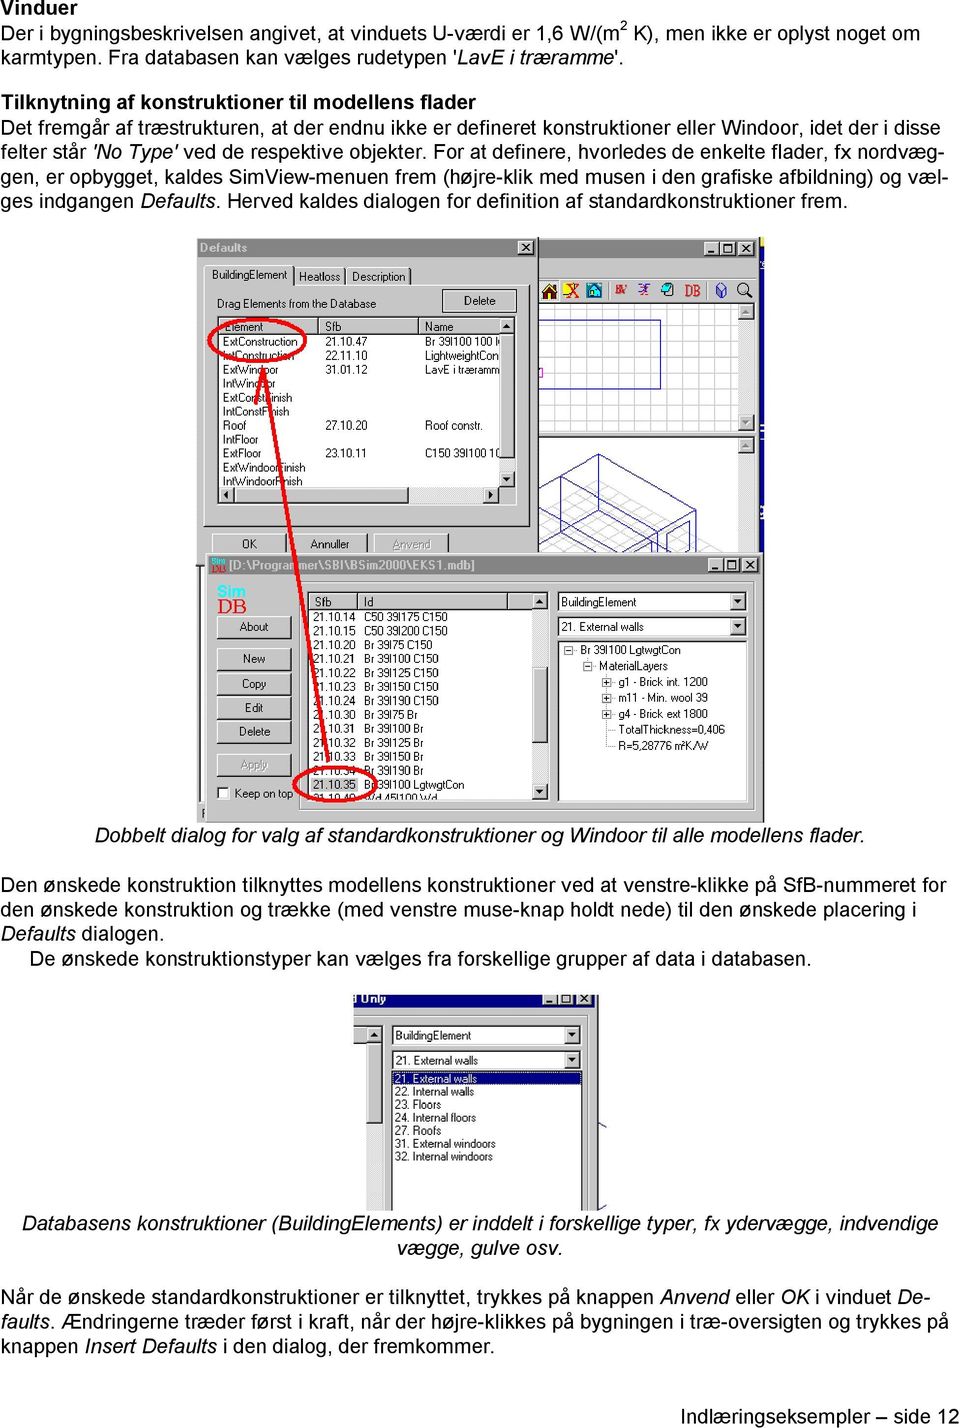 objekter. For at definere, hvorledes de enkelte flader, fx nordvæggen, er opbygget, kaldes SimView-menuen frem (højre-klik med musen i den grafiske afbildning) og vælges indgangen Defaults.